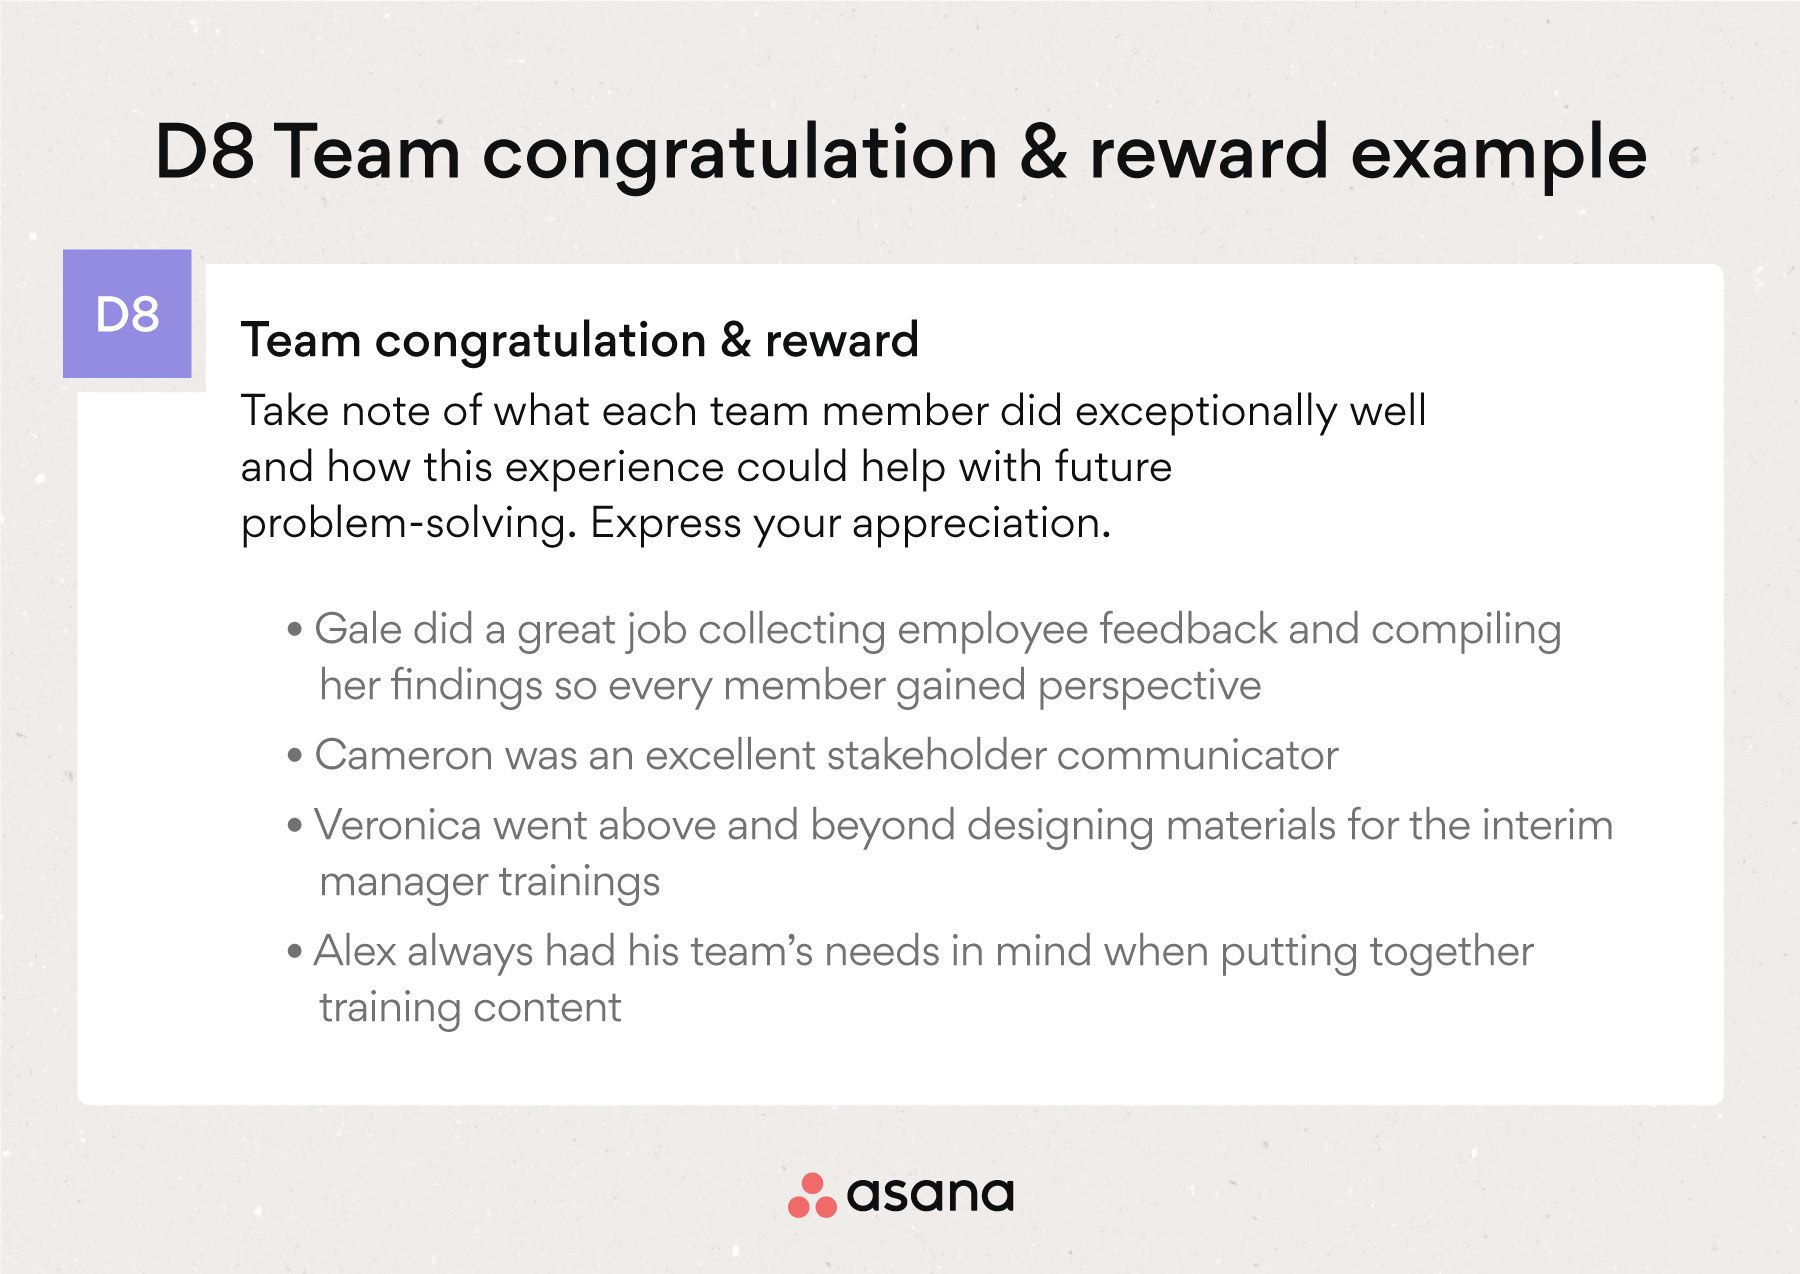 8D Team congratulations & reward example